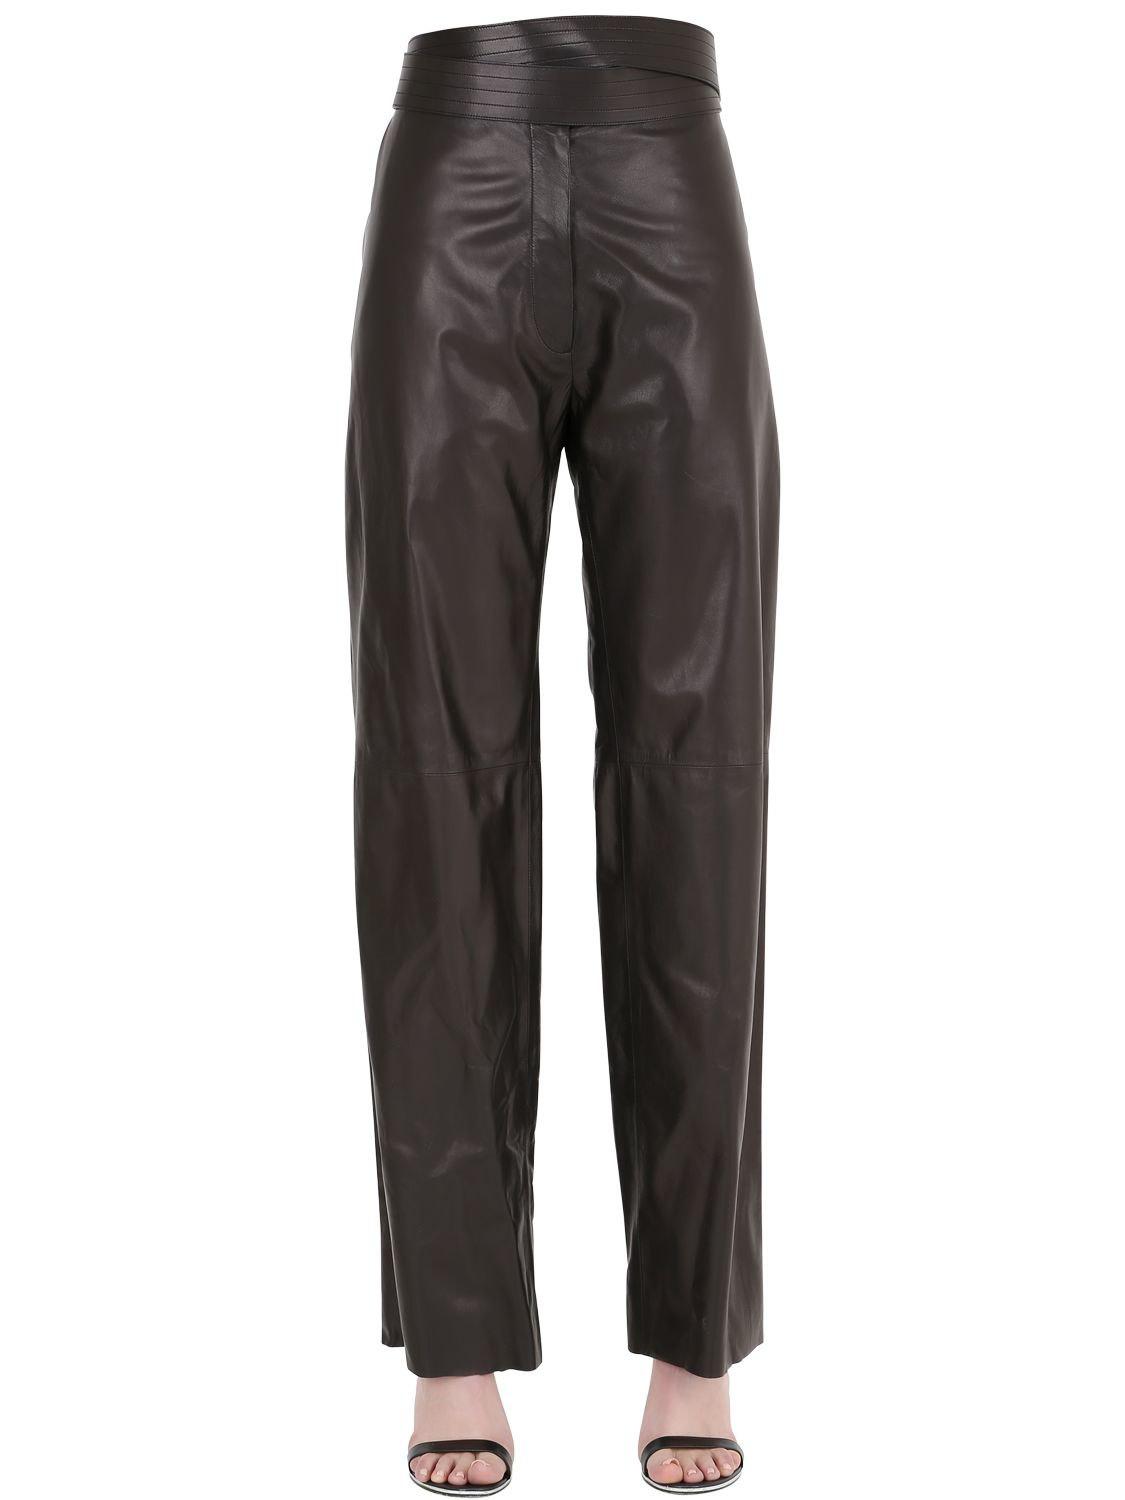 Lyst - Loewe Nappa Leather Pants in Black